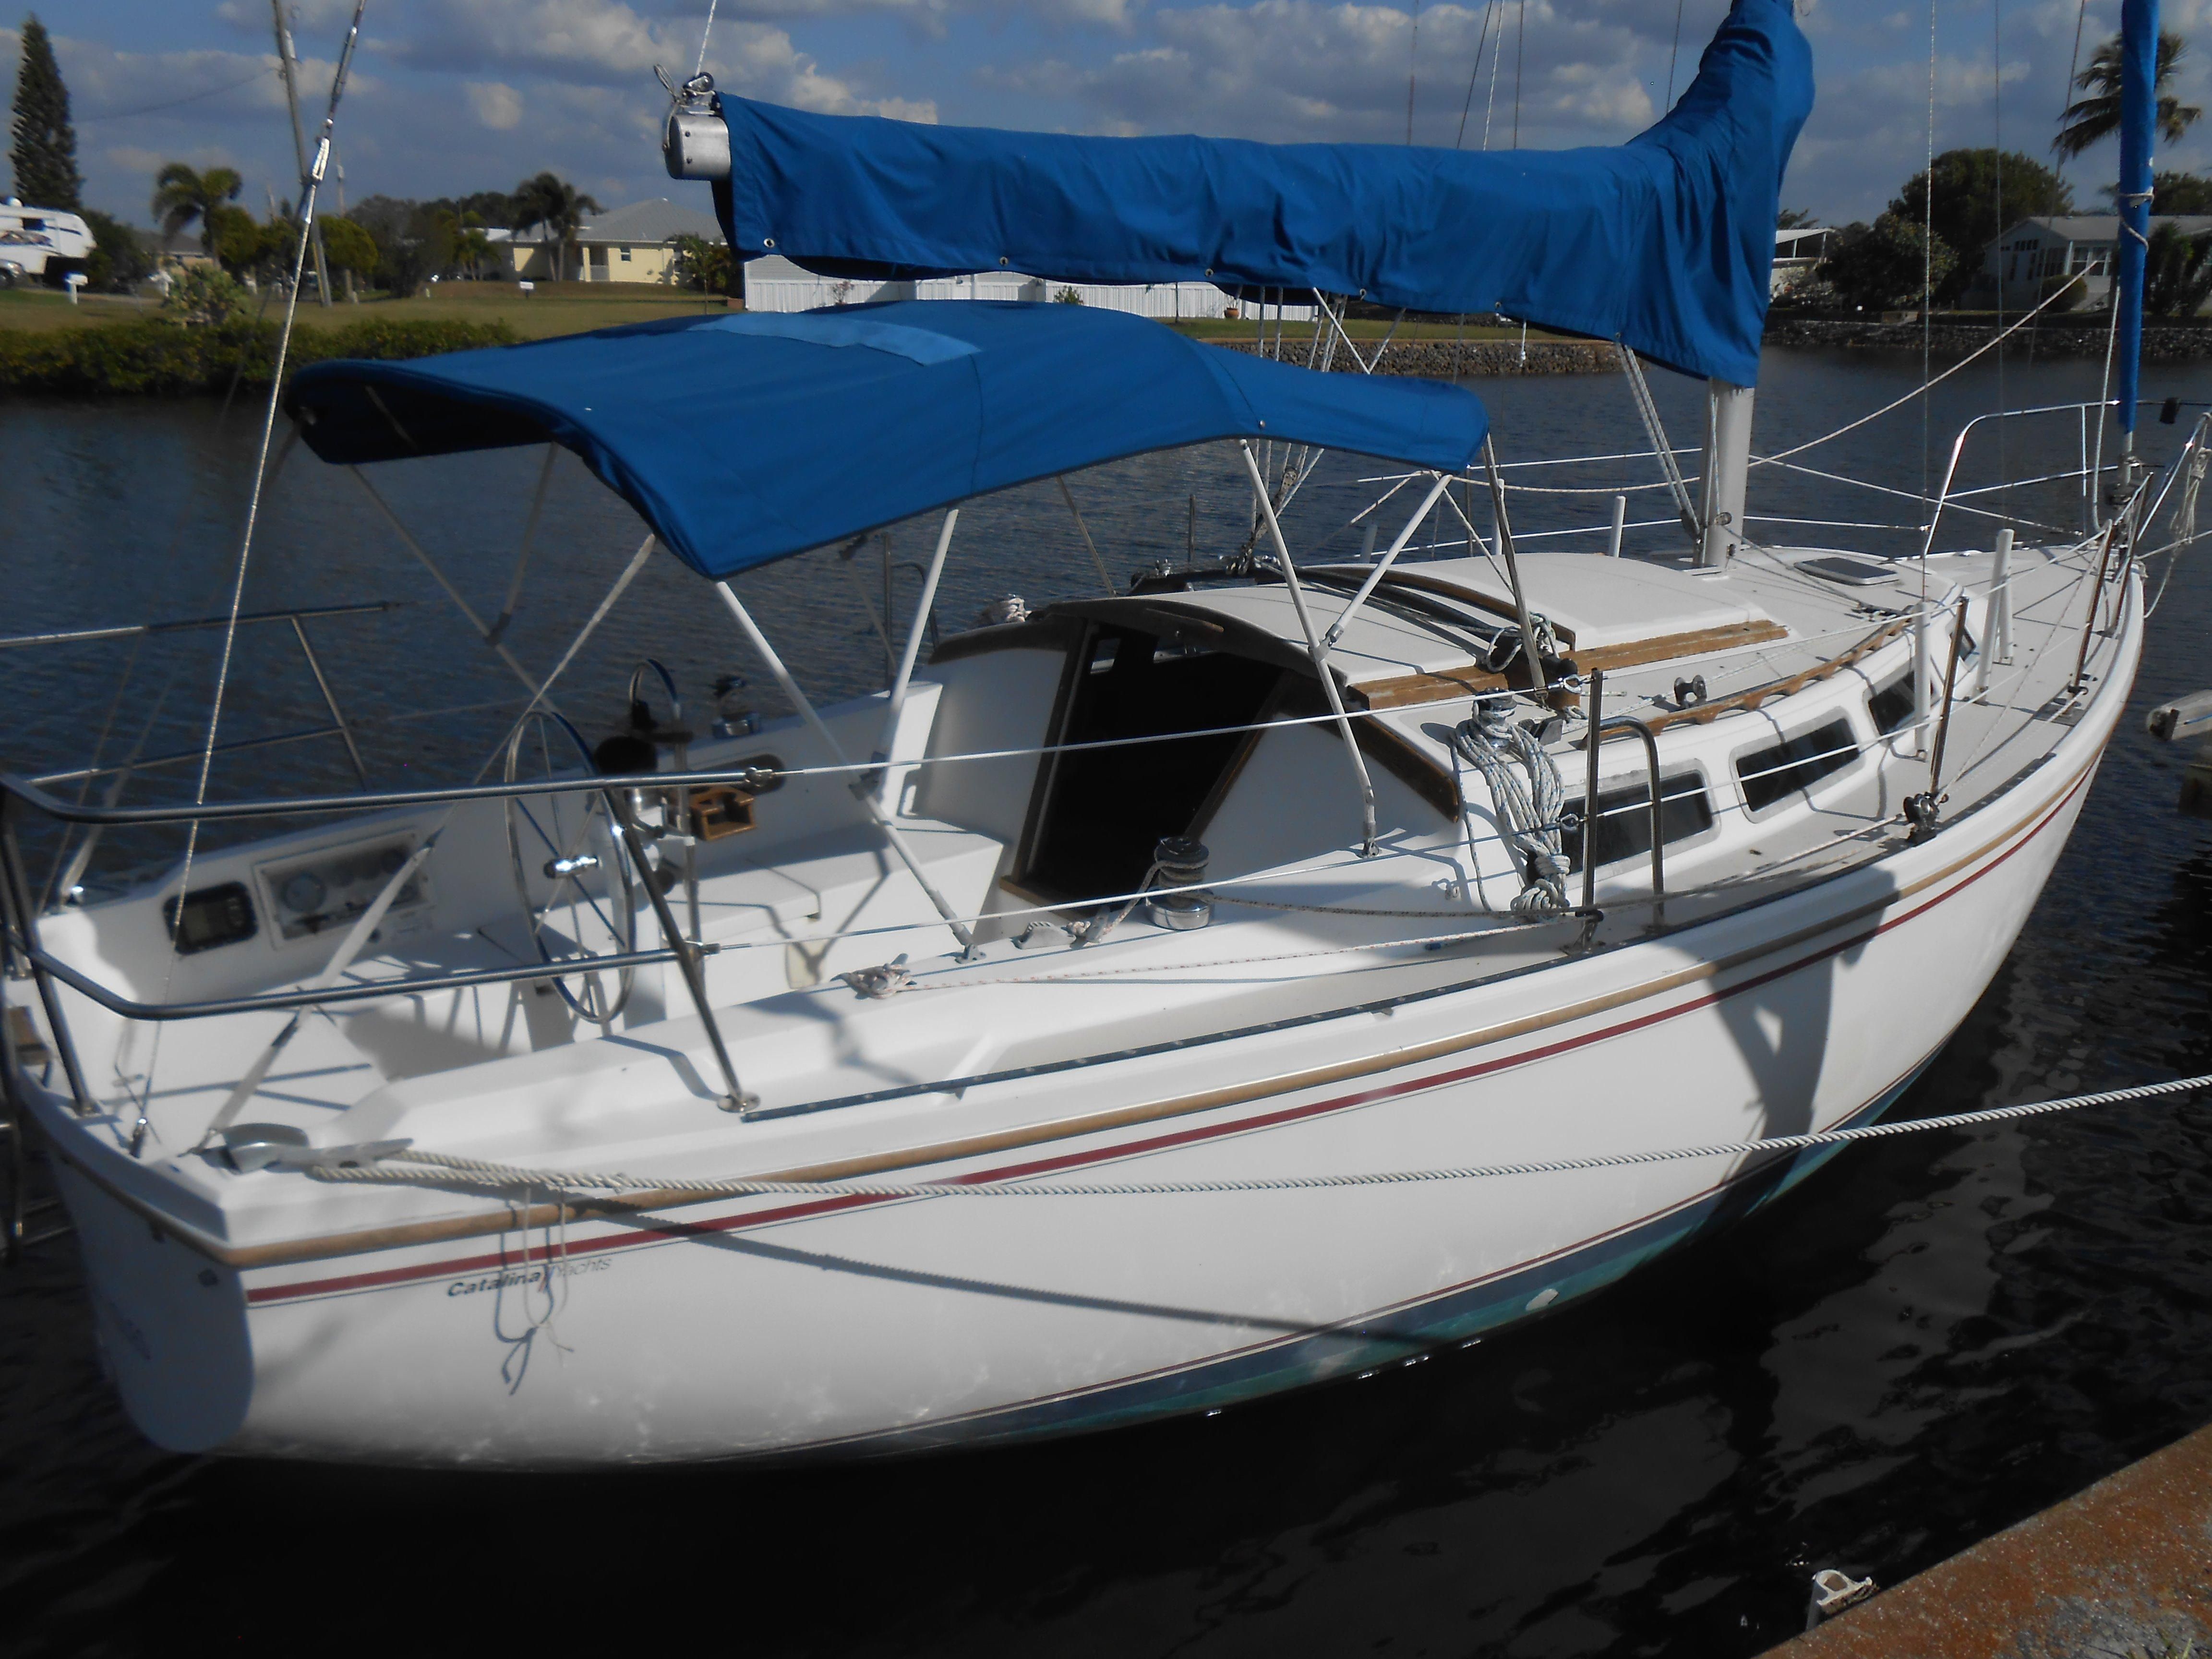 23 foot catalina sailboat